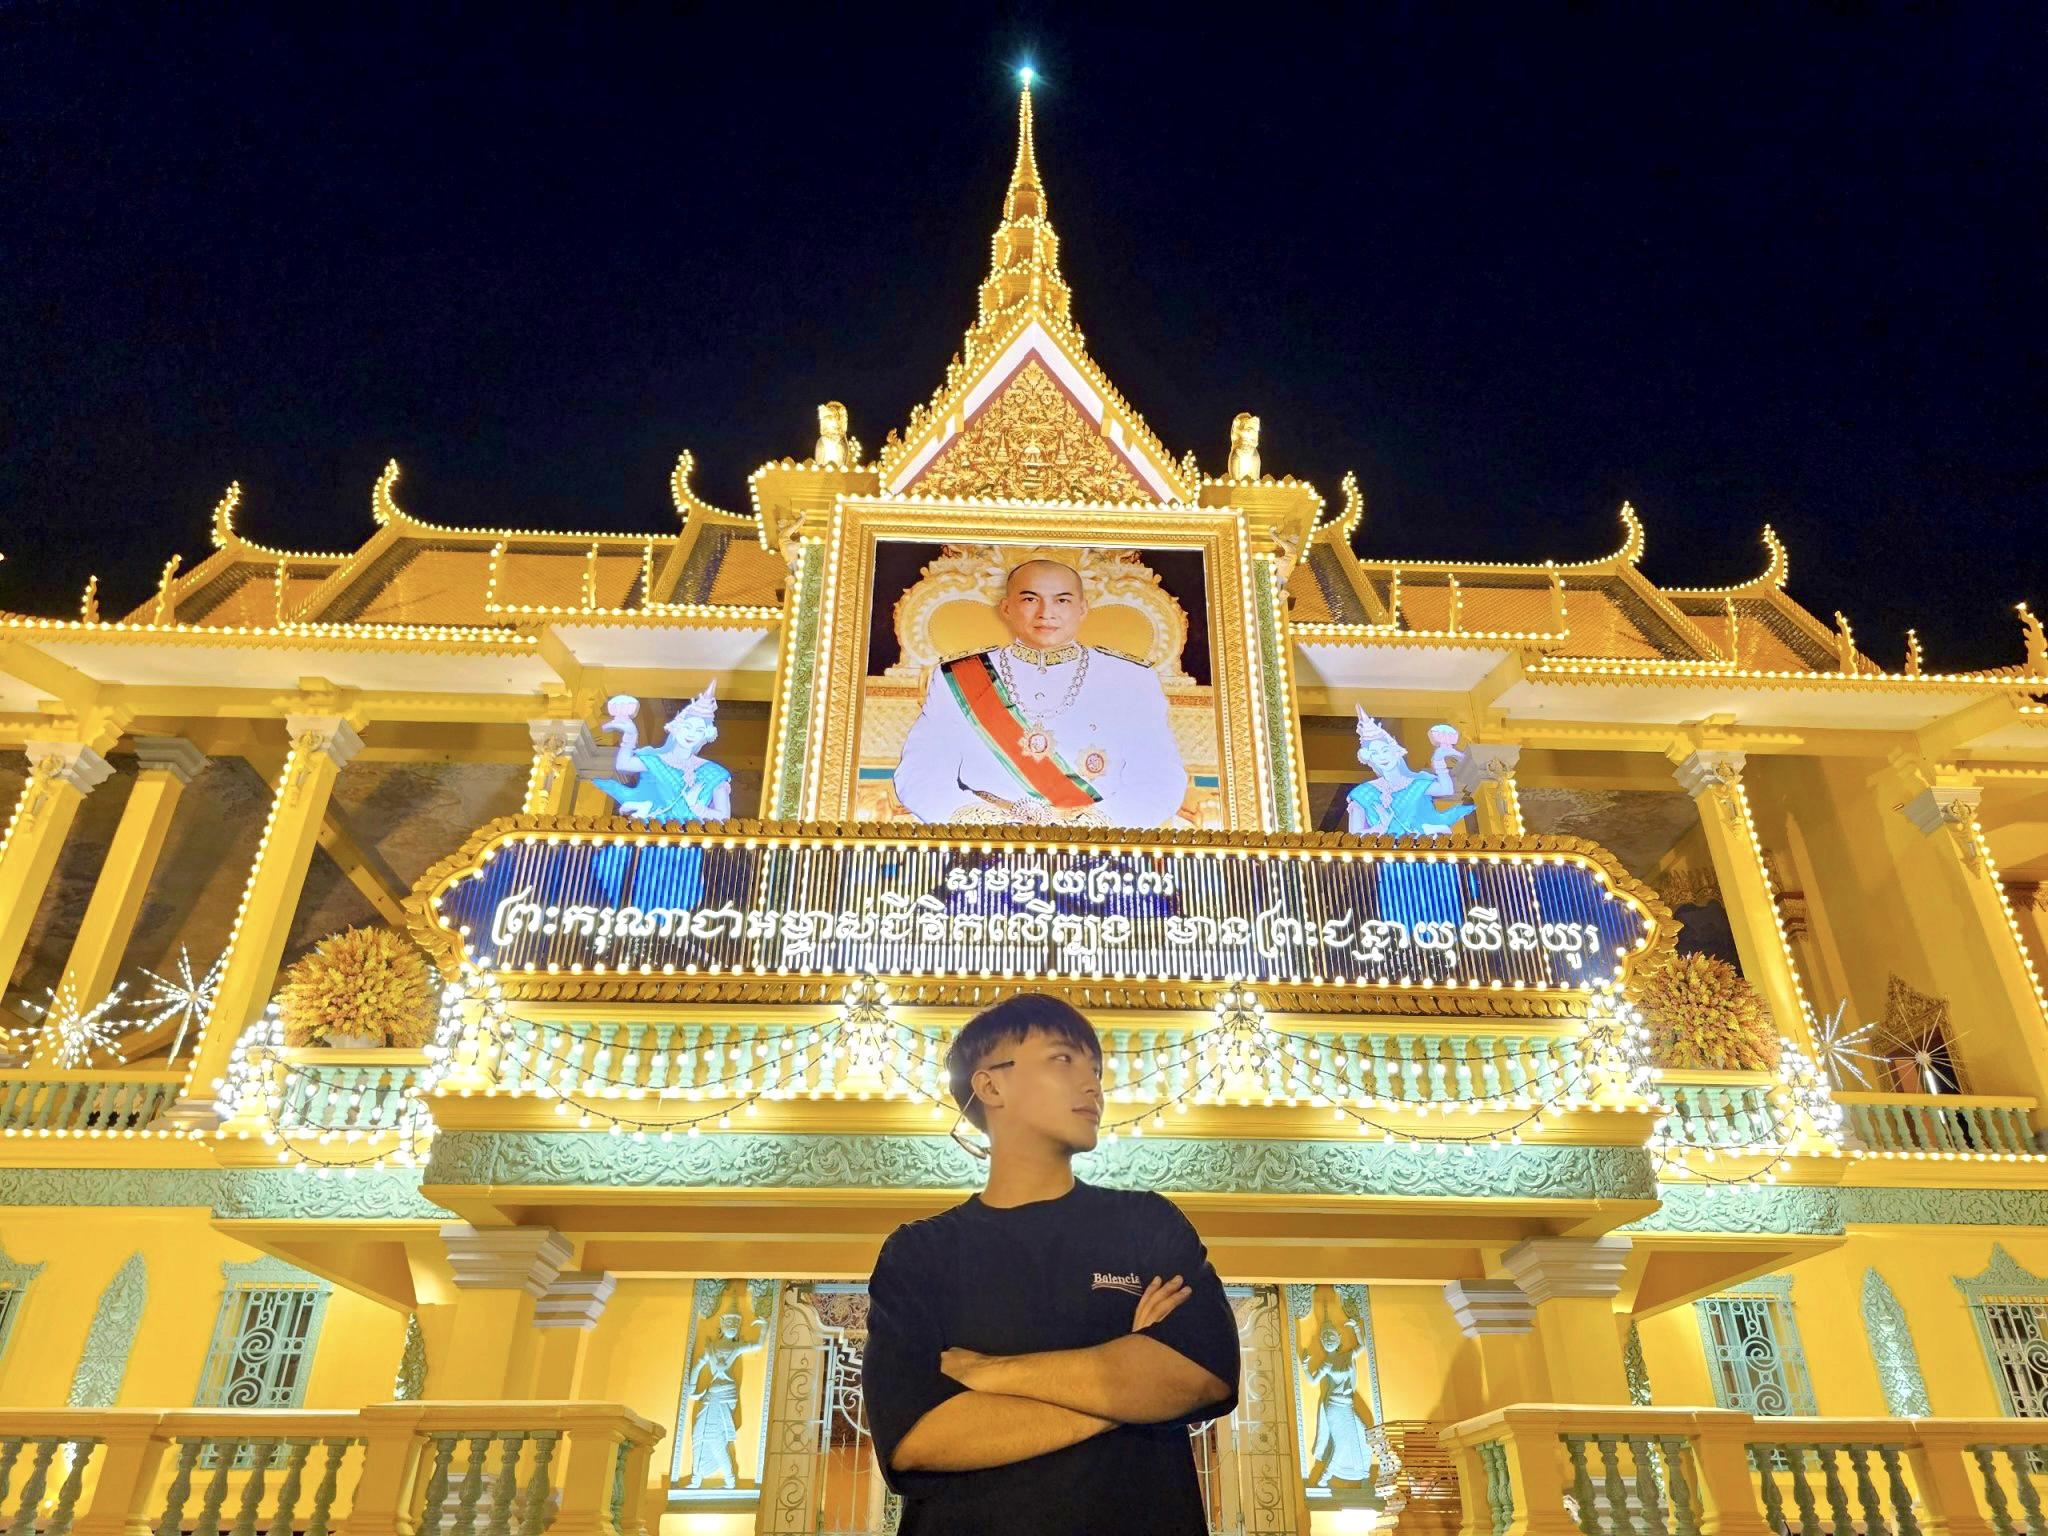 Travel Blogger Trầm Quyết gợi ý chuyến du lịch Campuchia chỉ từ 1,5 triệu đồng - 5